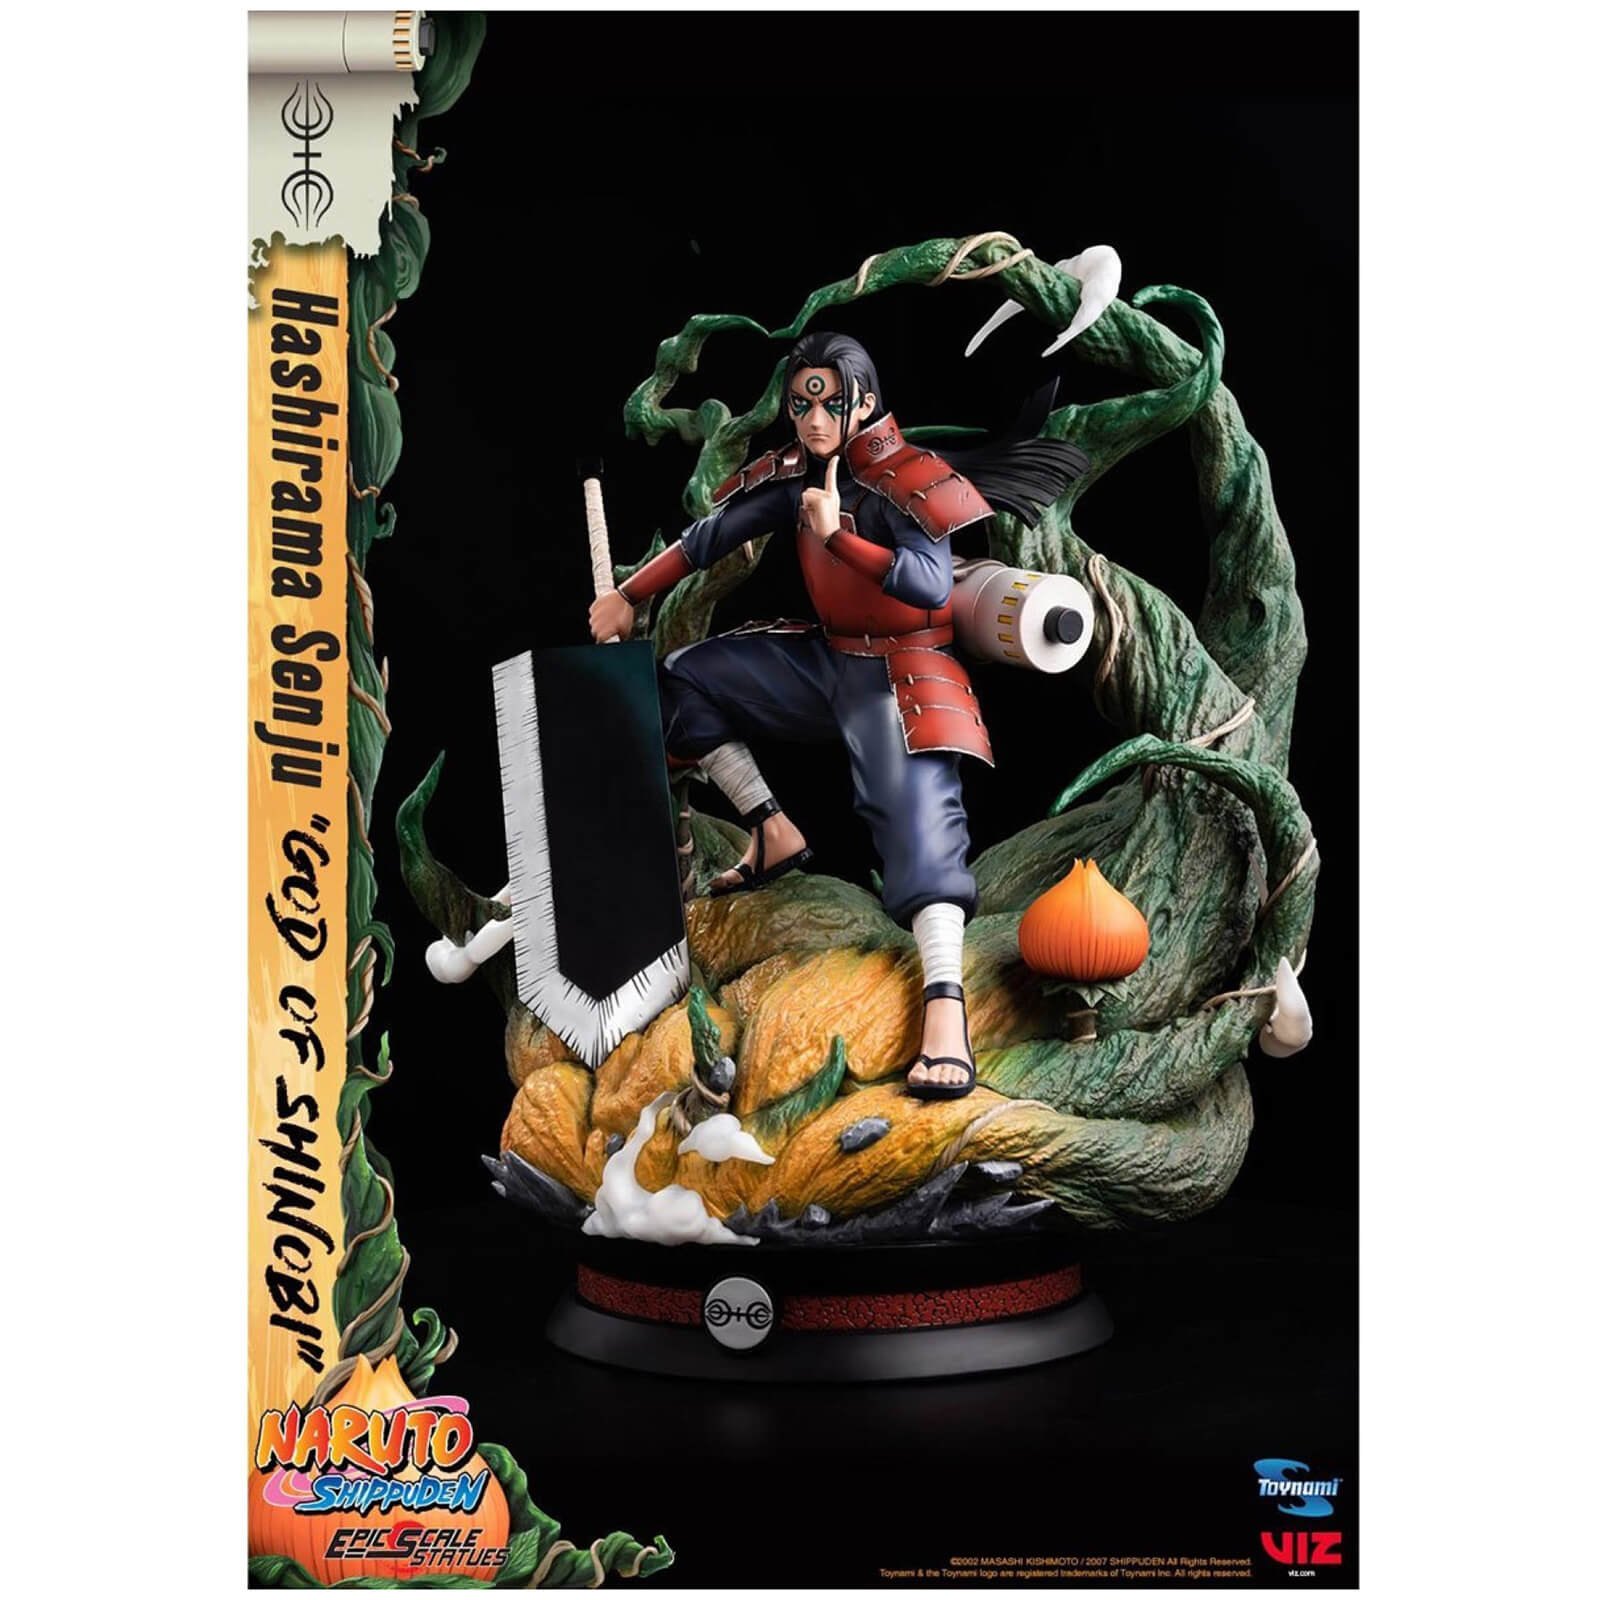 Naruto Shippuden Epic Scale Statue - Hashirama Senju (God of Shinobi)